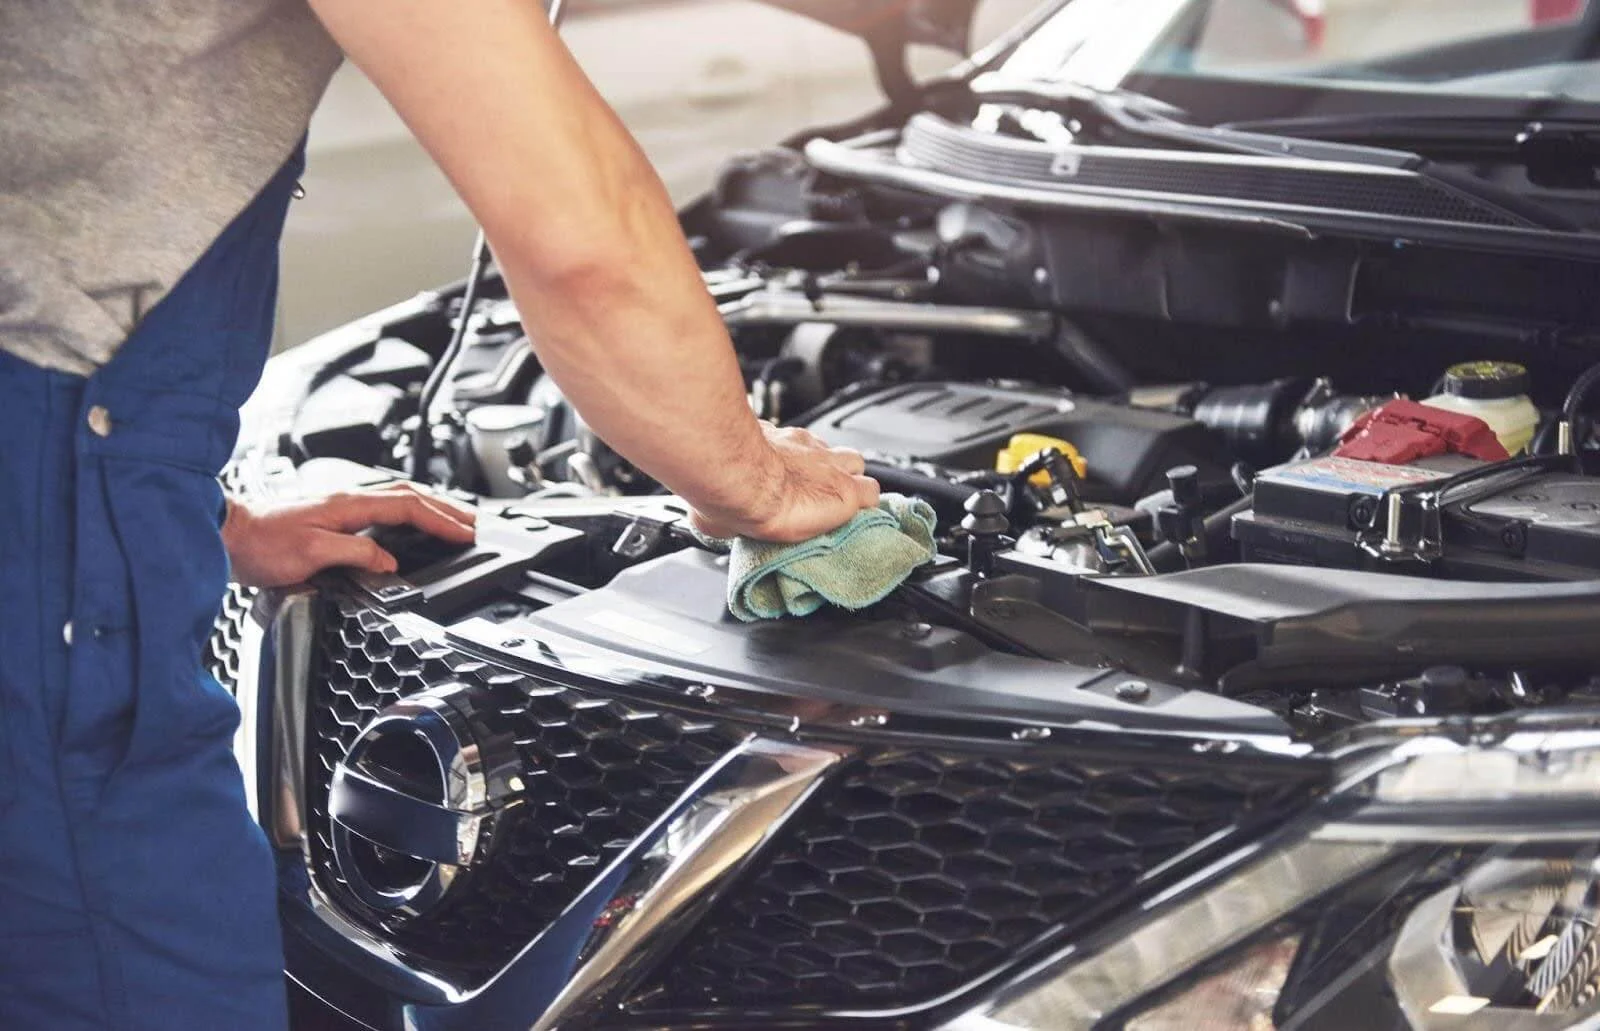 Na imagem, um mecânico está limpando o zinabre da bateria de um carro com um pano.